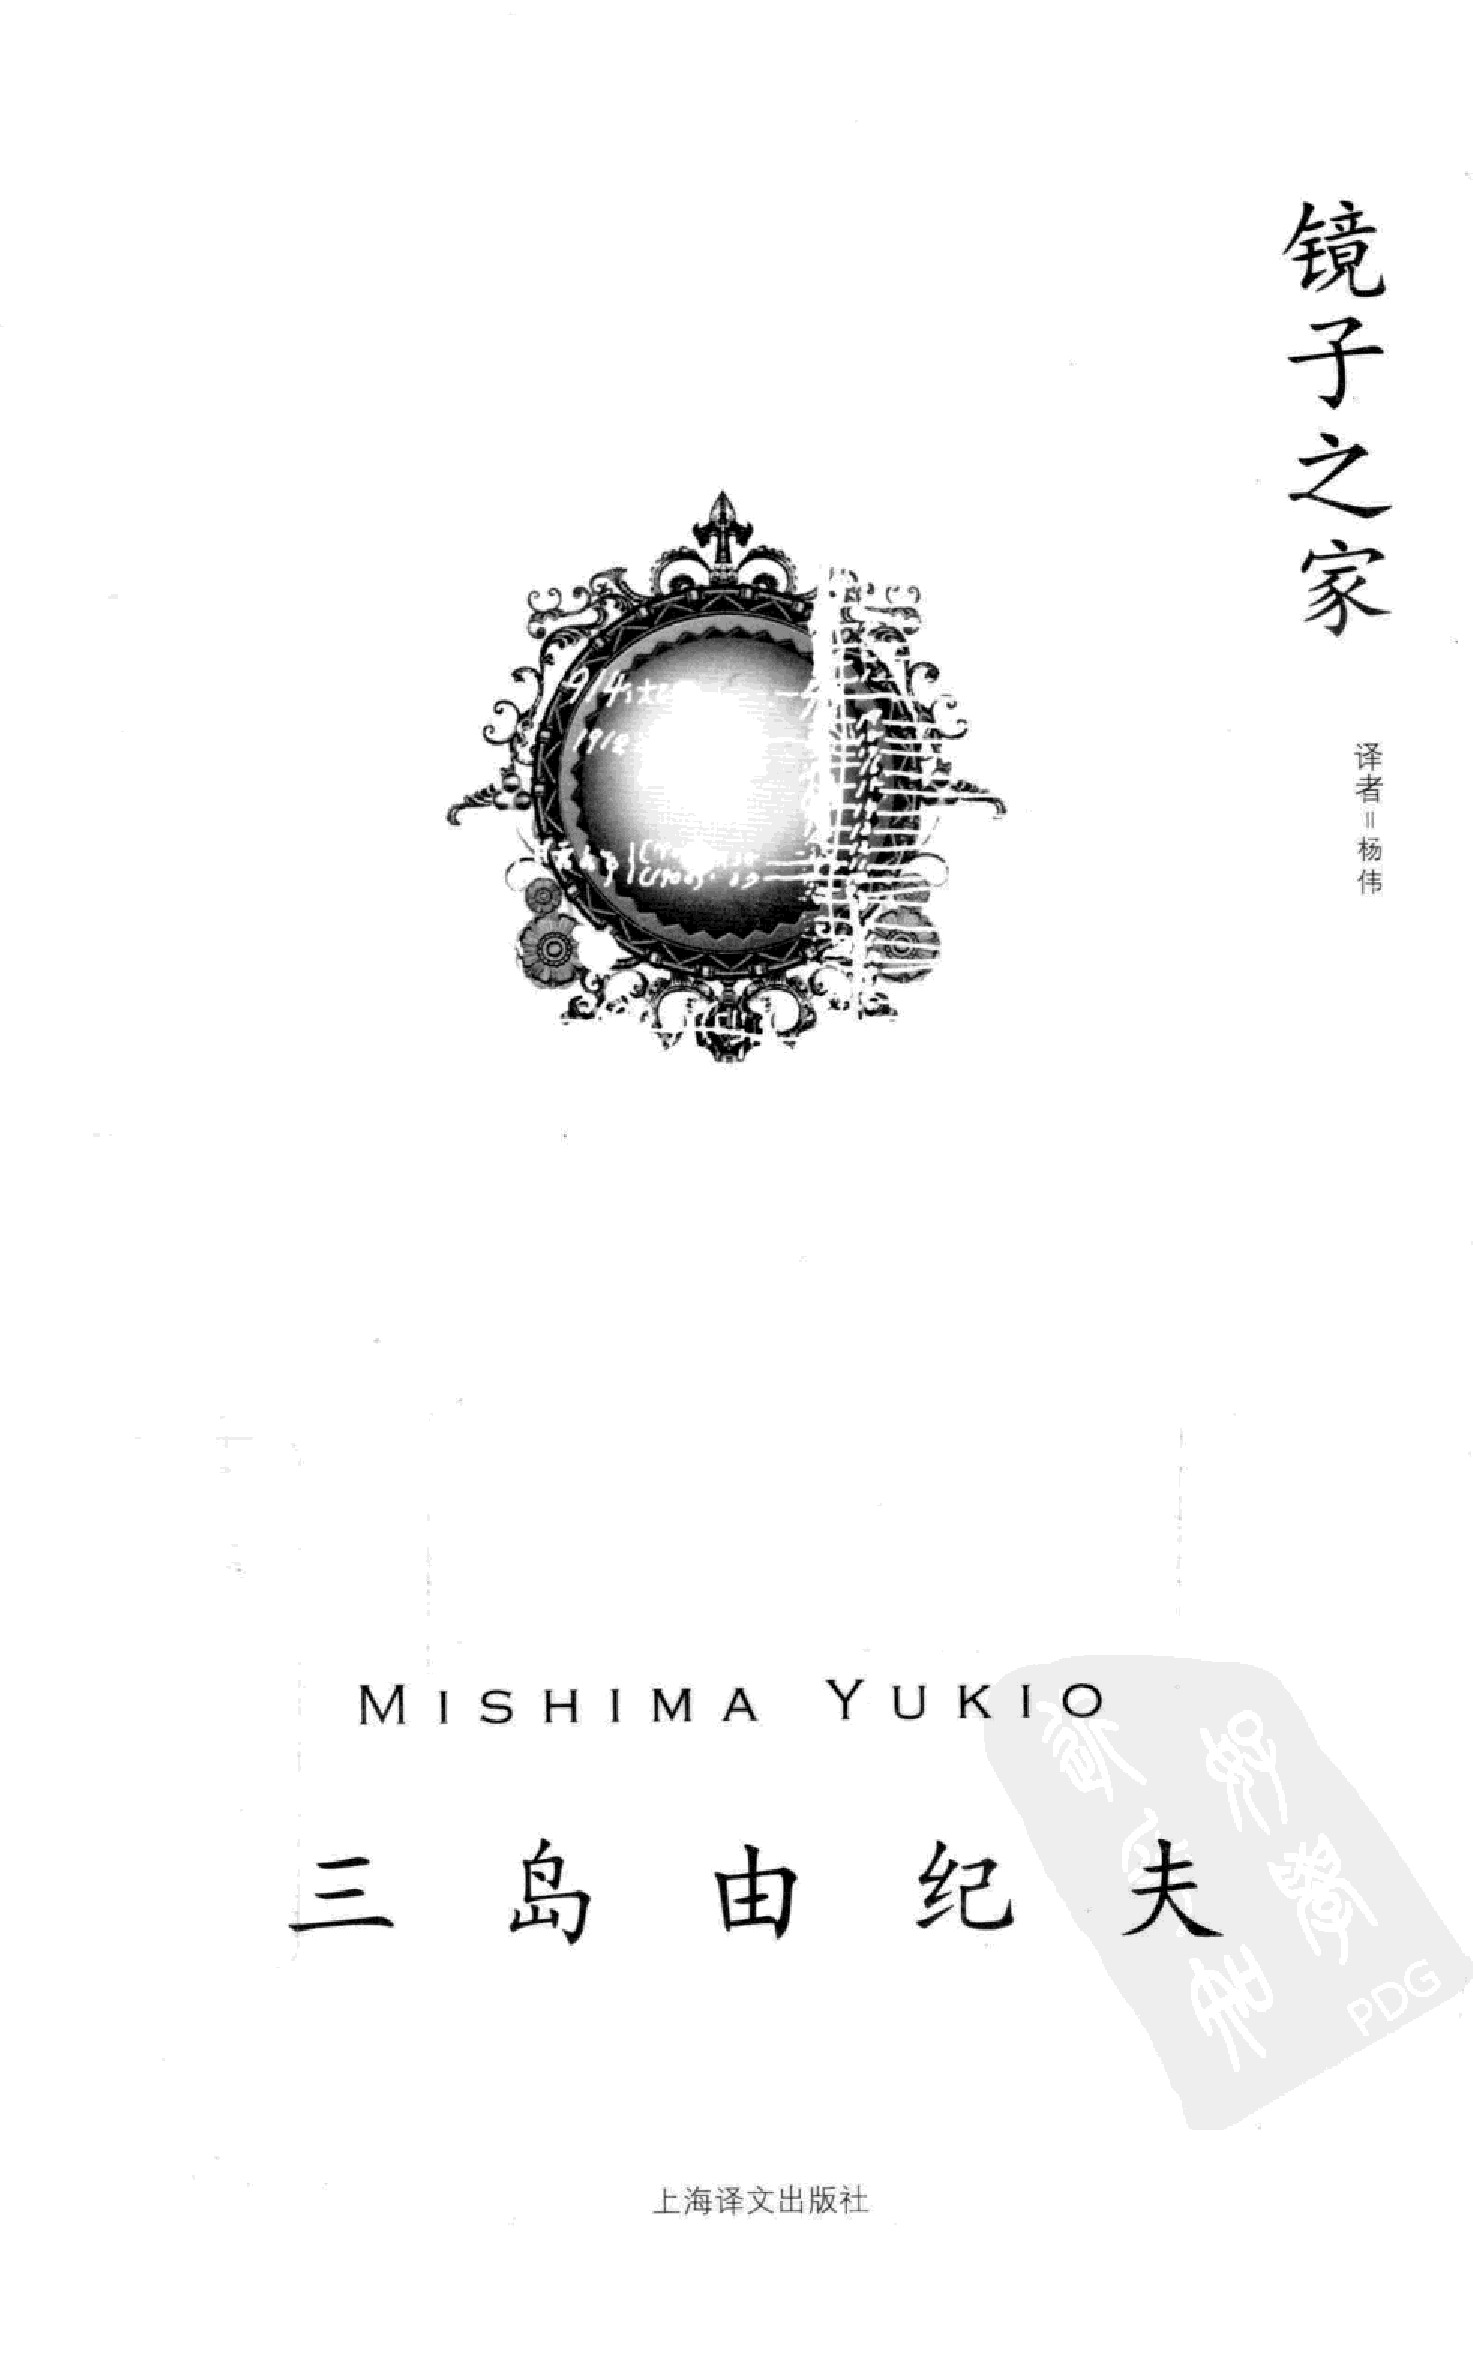 镜子之家[日]三岛由纪夫.杨伟译.上海译文出版社(2011)